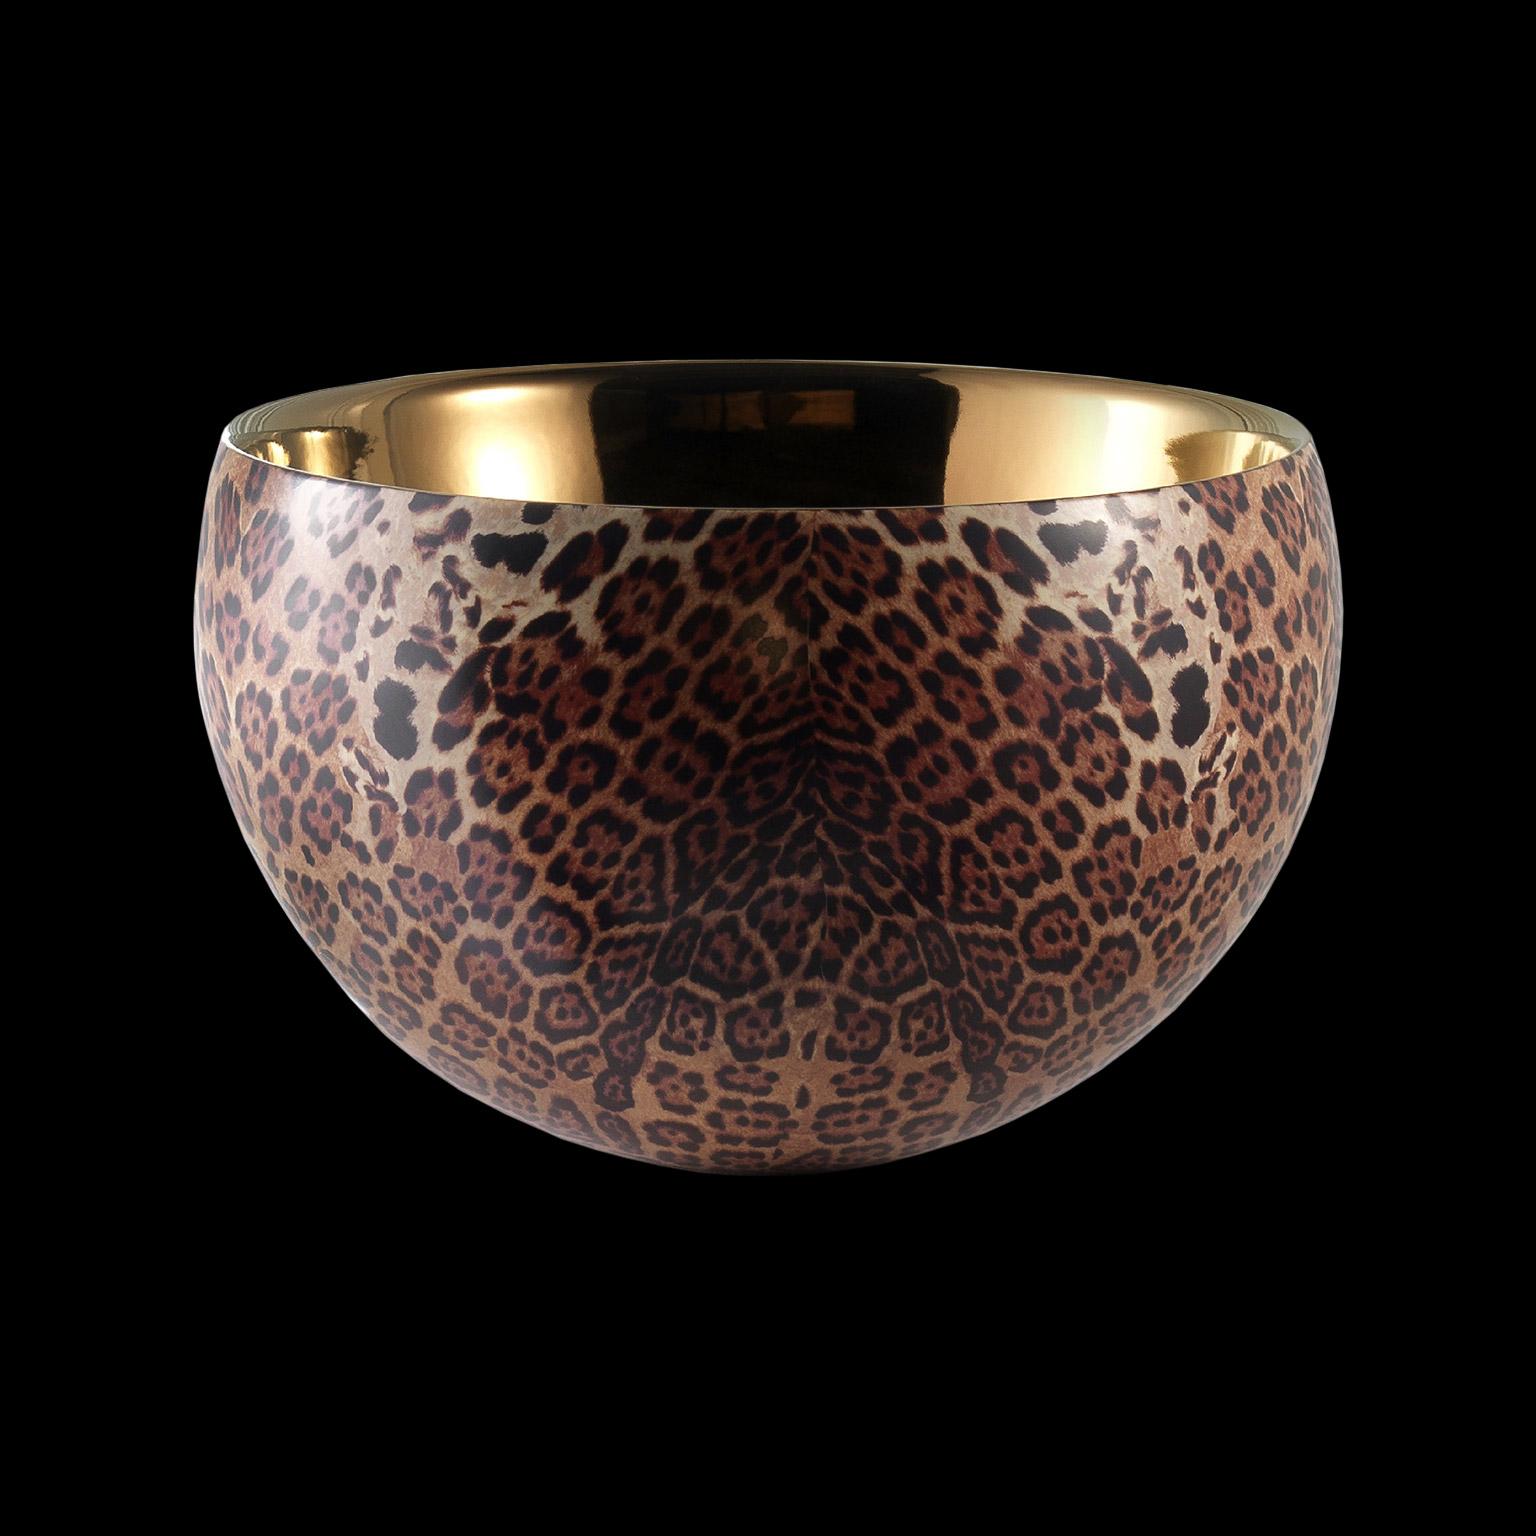 Cuenco de cerámica BOWLS hecho a mano en bronce con decoración de leopardo en el exterior

bacalao. BA055
Medidas: H. 30,0 cm. - Dm. 55.0 cm.